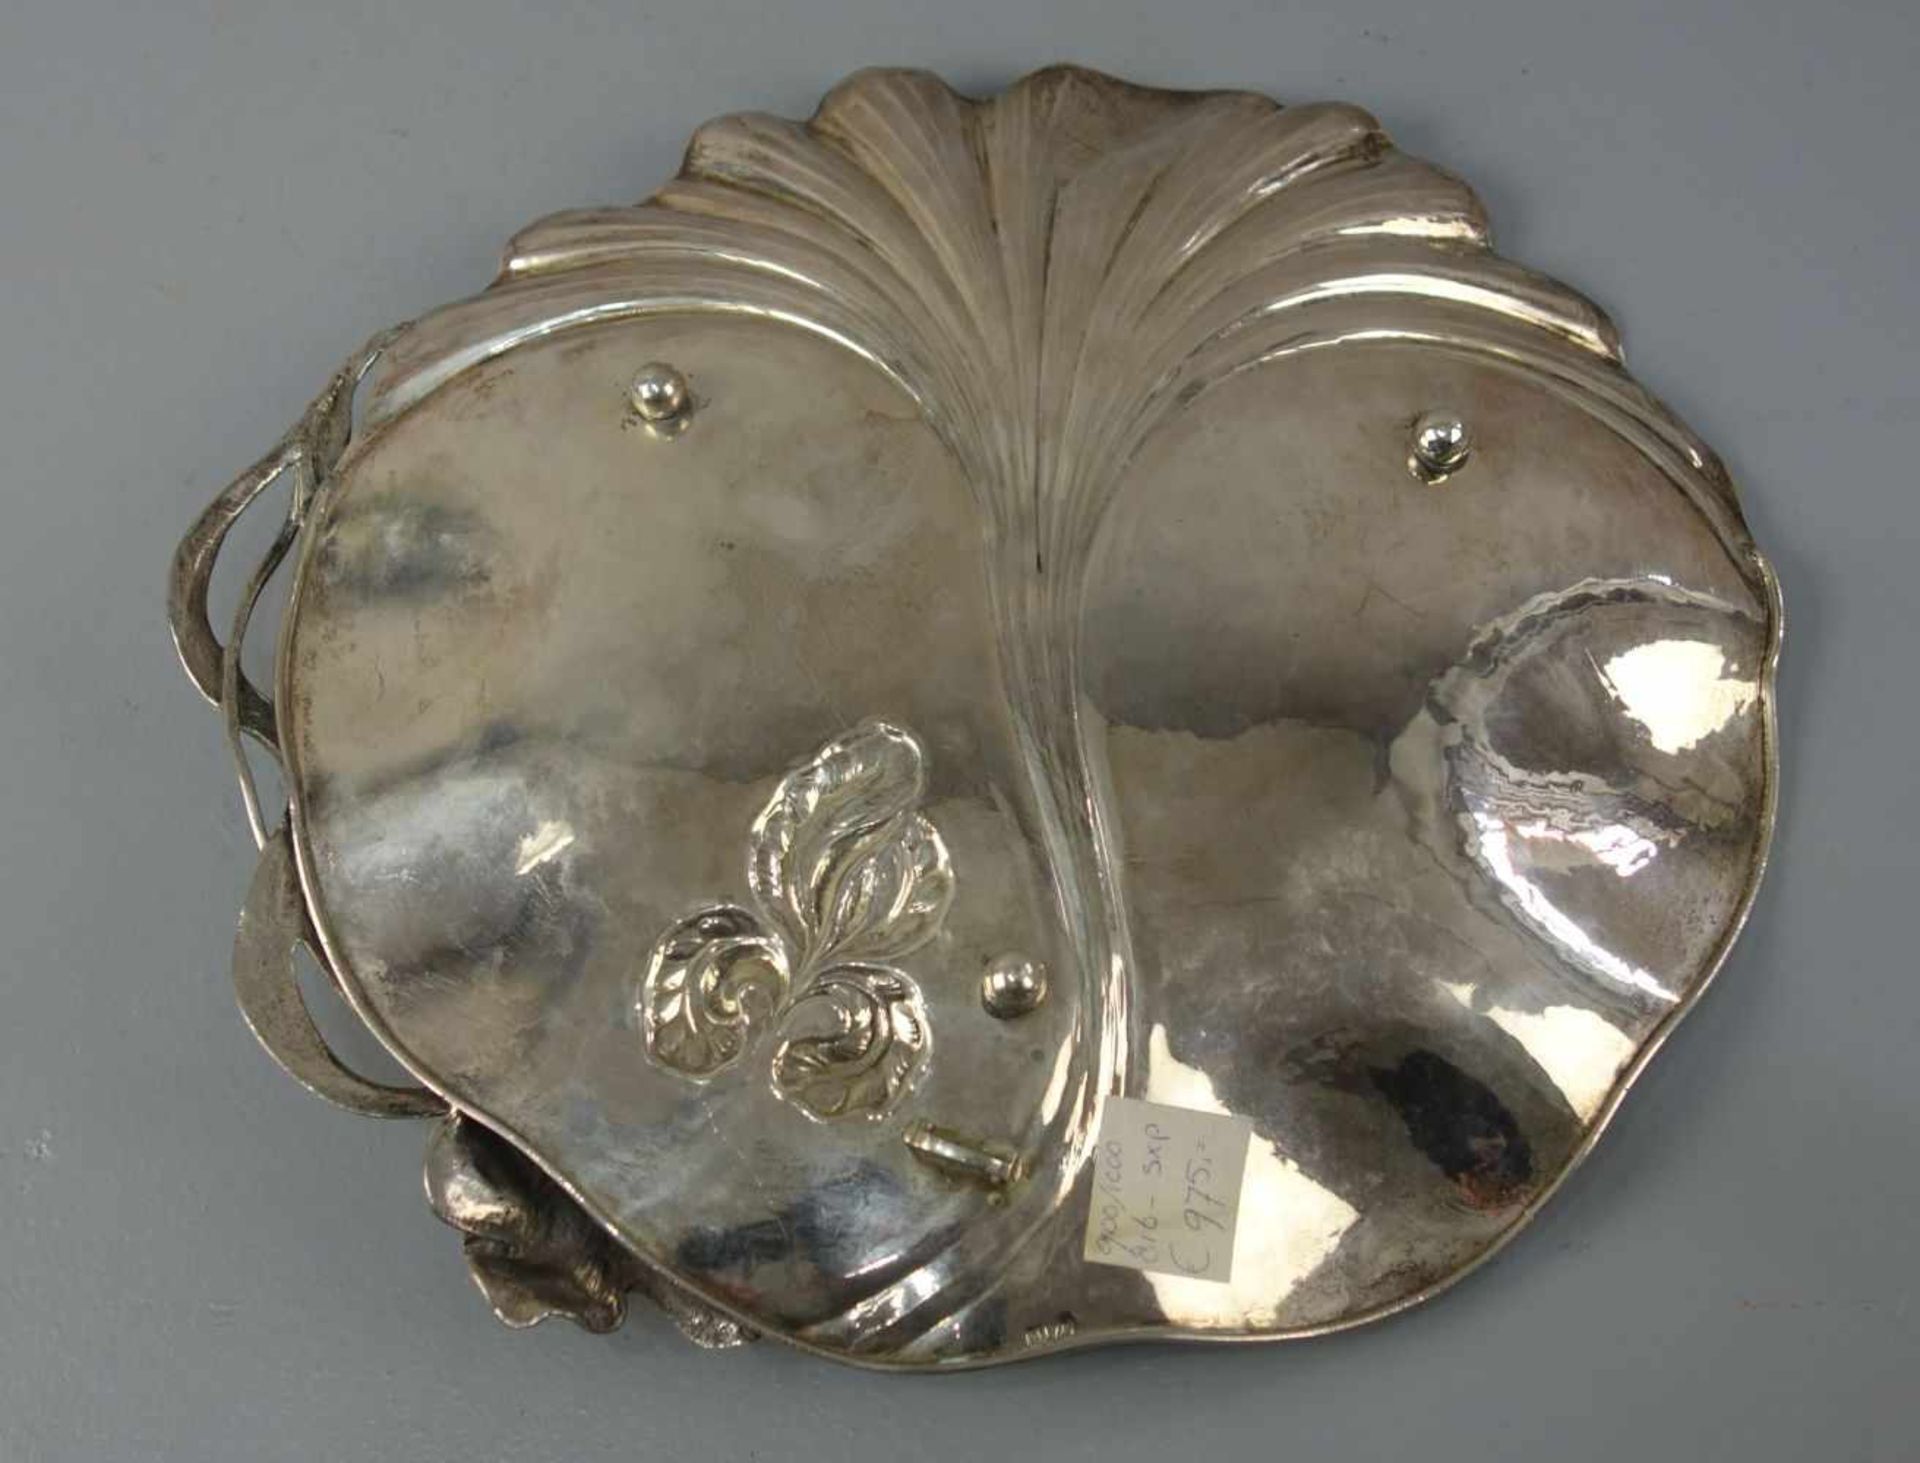 SILBERNE SCHALE MIT FLORALDEKOR im Stil des Jugendstils / silver bowl with gingko and flag lily - Bild 3 aus 3